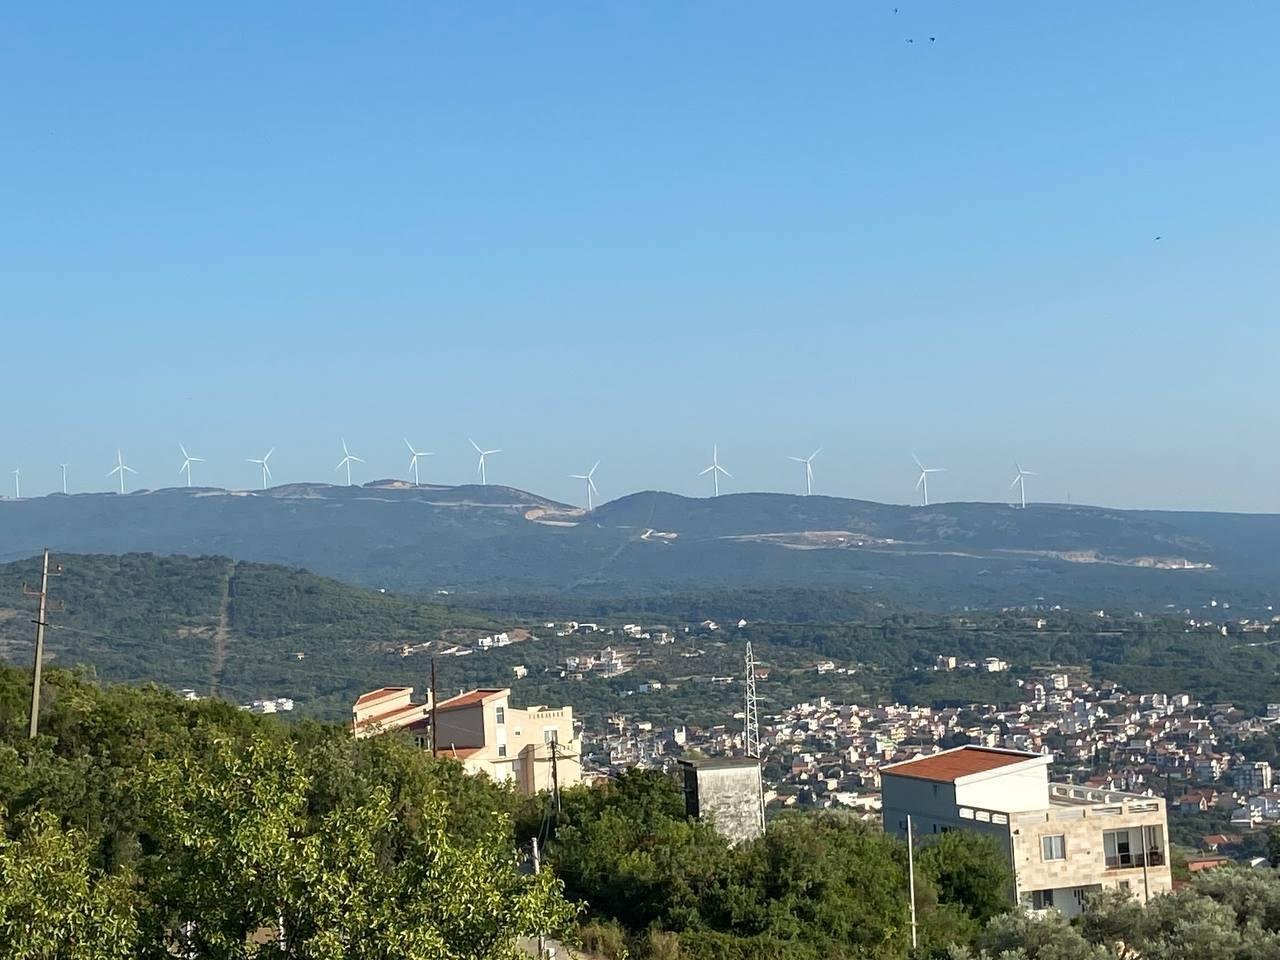 В Черногории тоже пытаются в зеленую энергию, но пока не оч идет (количество ветряков за последние 5 лет не изменилось, да и половина не работала когда мы проезжали мимо)